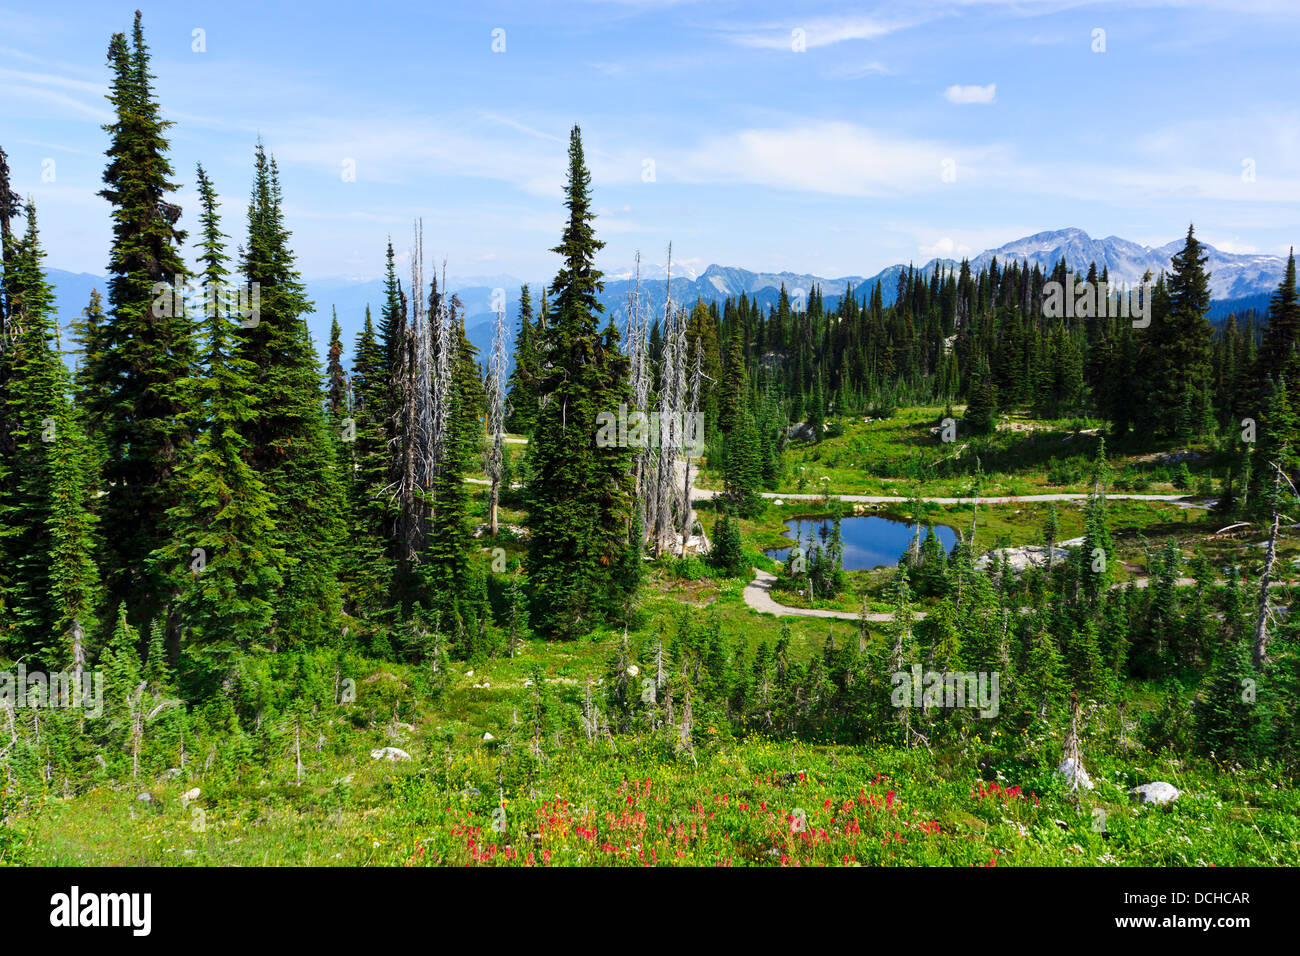 Randonnée à travers les prairies alpines au sommet du mont Revelstoke. Le parc national du mont Revelstoke, British Columbia, Canada. Banque D'Images